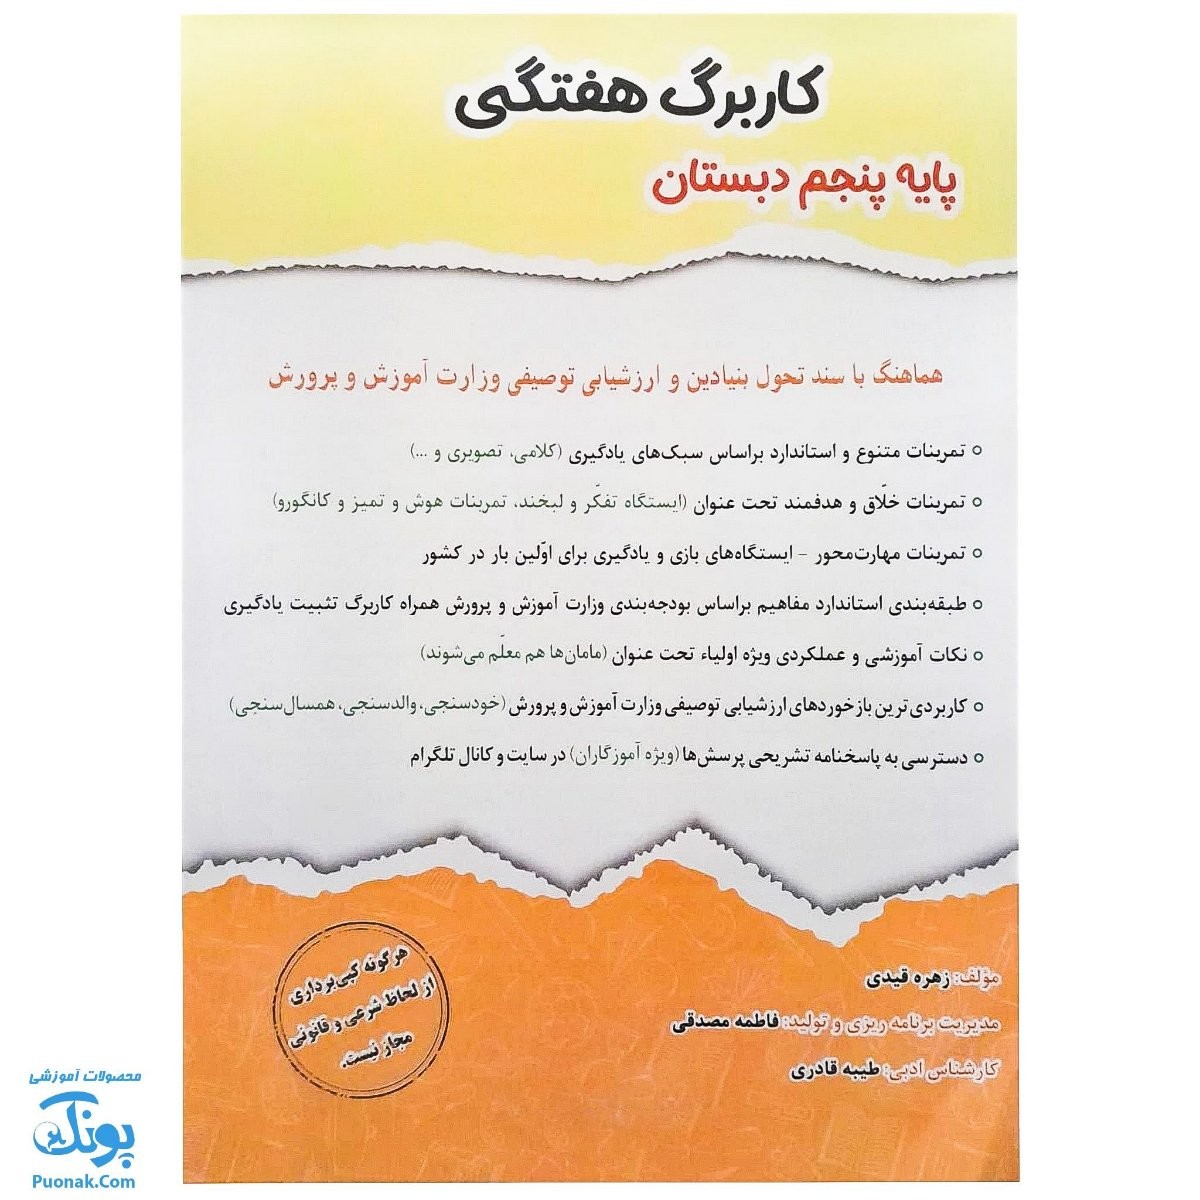 کاربرگ هفتگی پایه پنجم دبستان حسامی (هماهنگ با آخرین عملکرد ارزشیابی کیفی - توصیفی وزارت آموزش و پرورش)